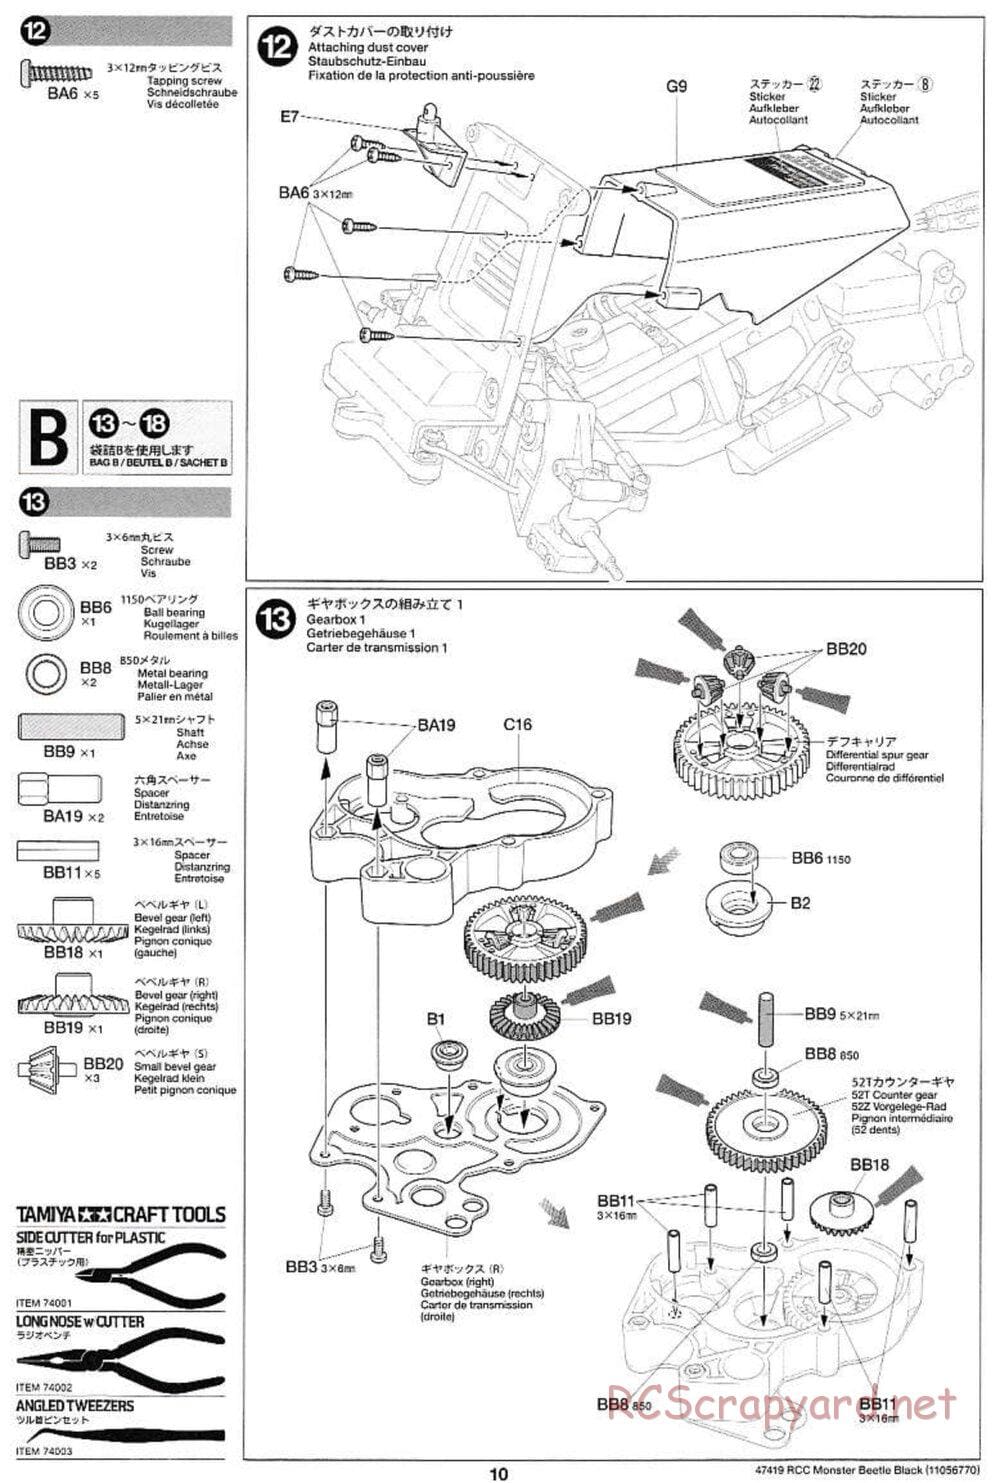 Tamiya - Monster Beetle Black Edition - ORV Chassis - Manual - Page 10